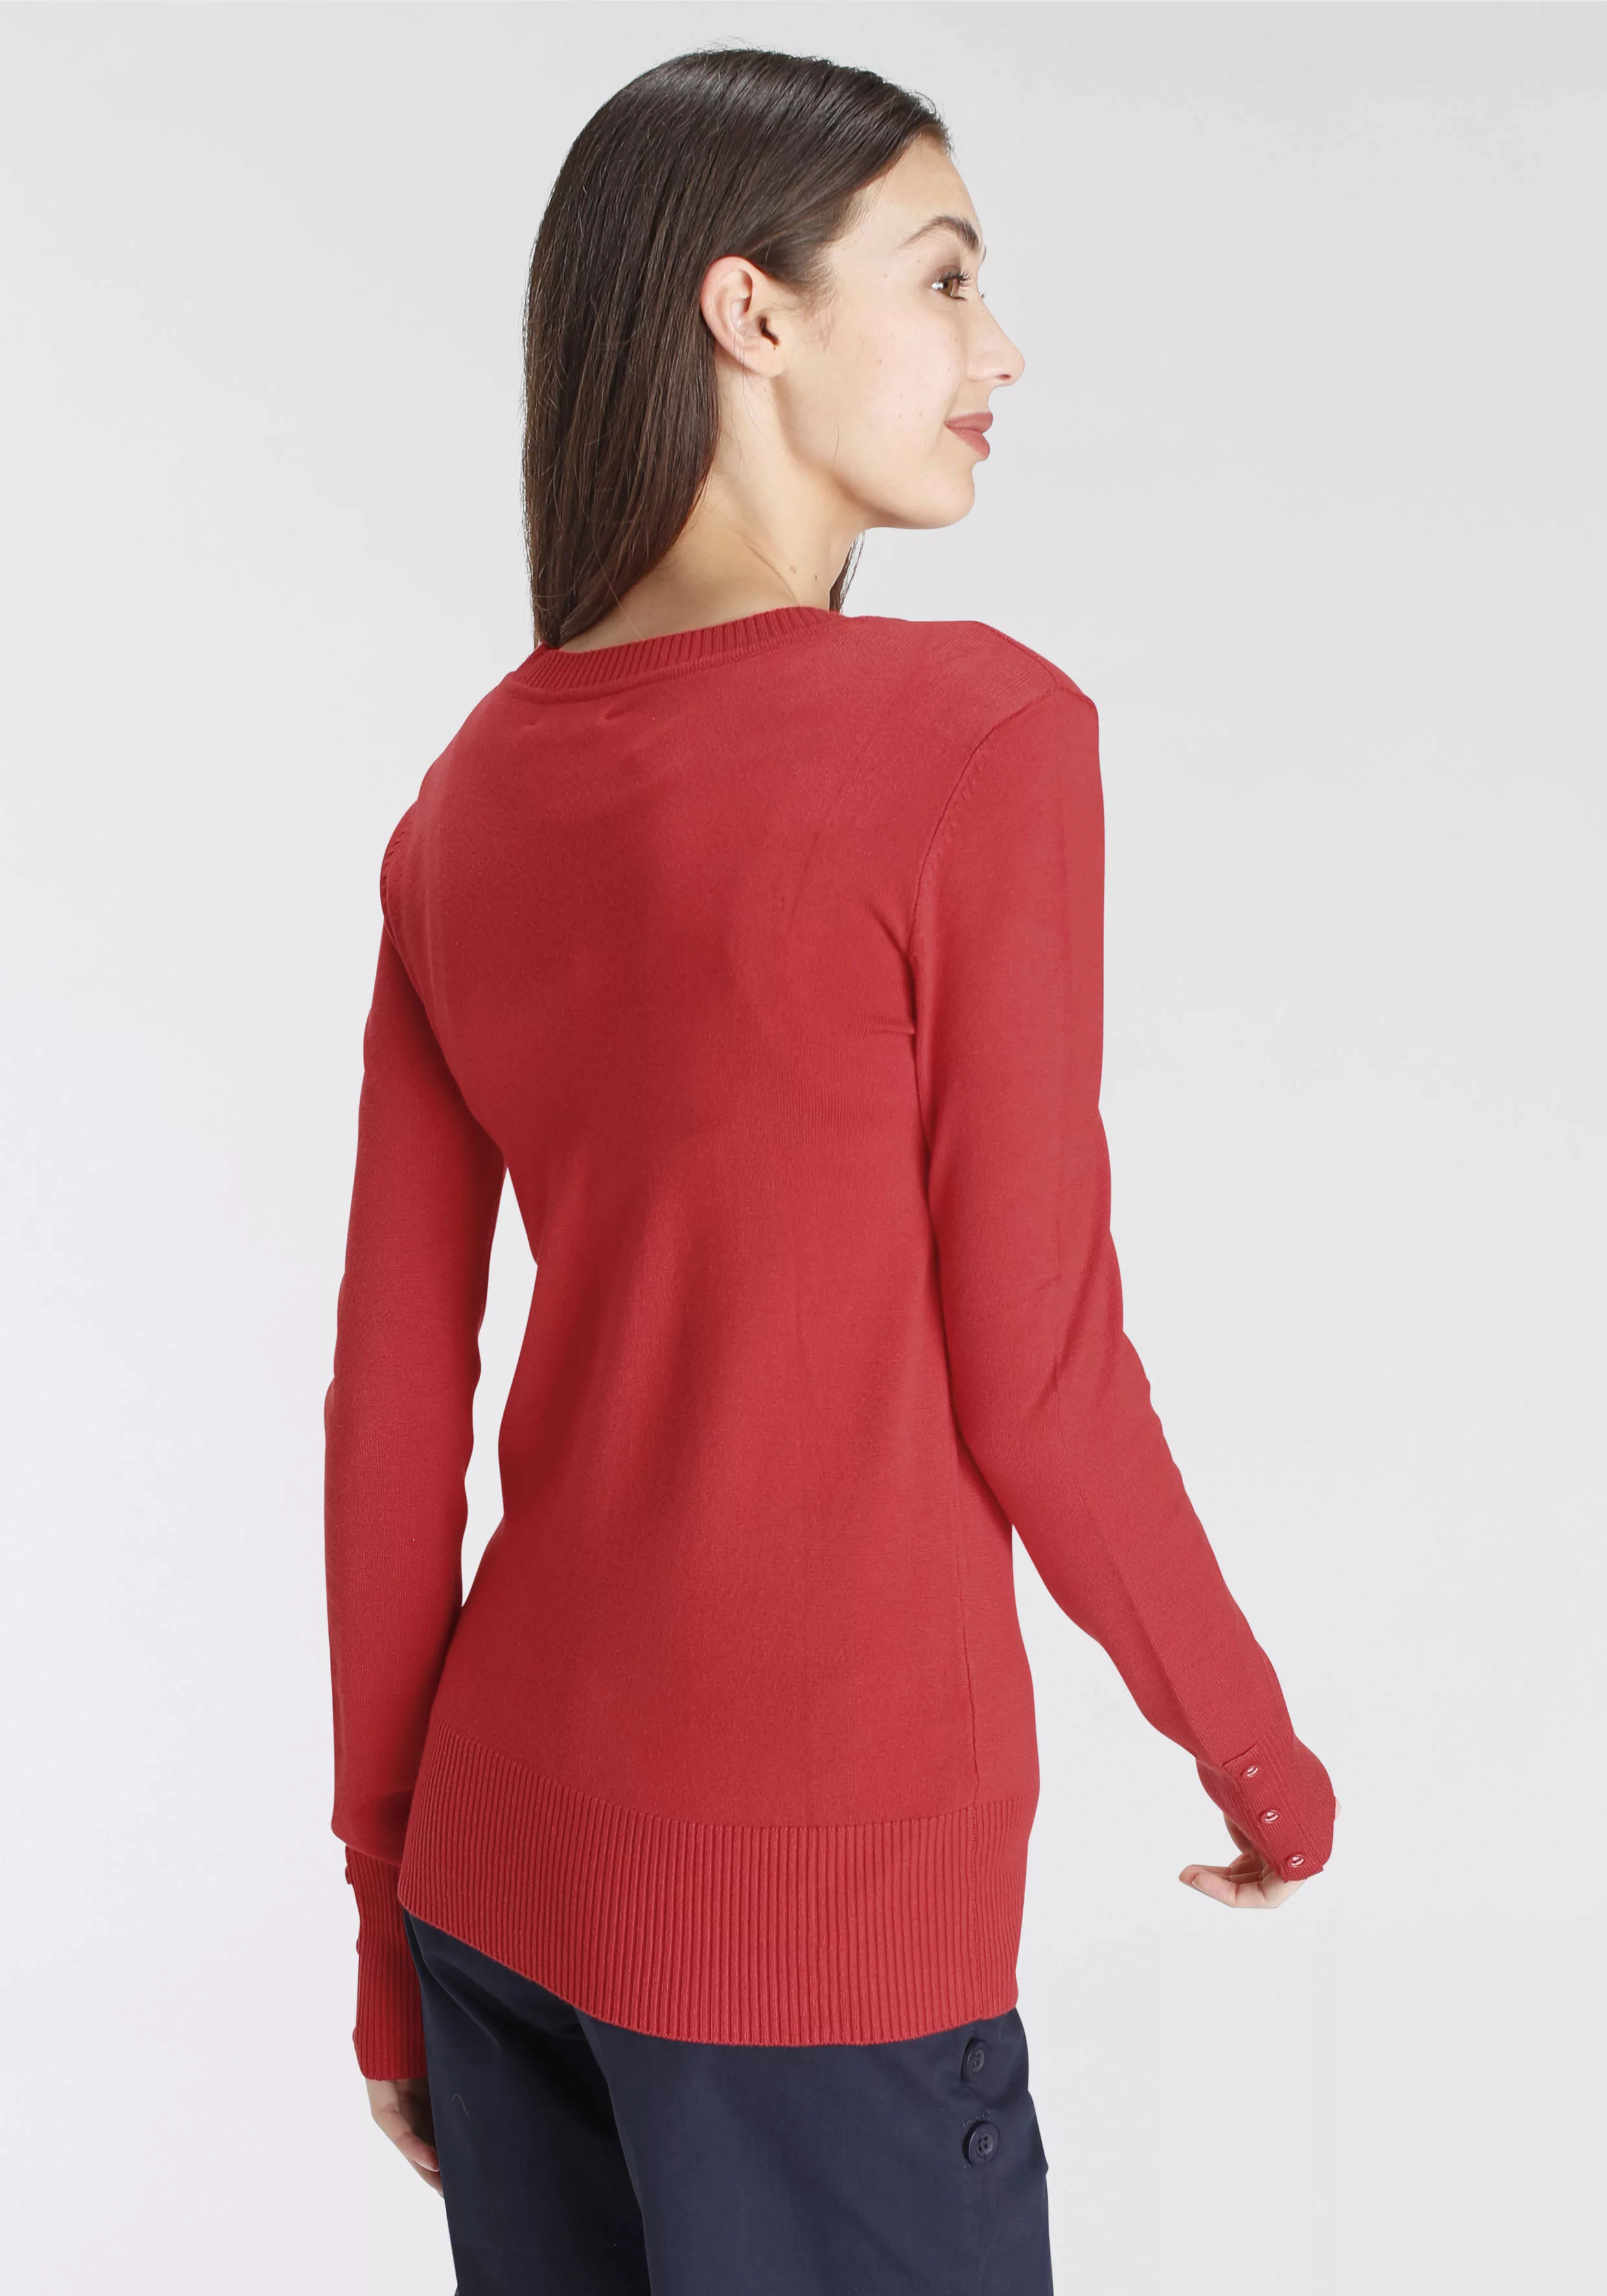 DELMAO V-Ausschnitt-Pullover, mit kleinem Logodruck auf der Brust - NEUE MA günstig online kaufen